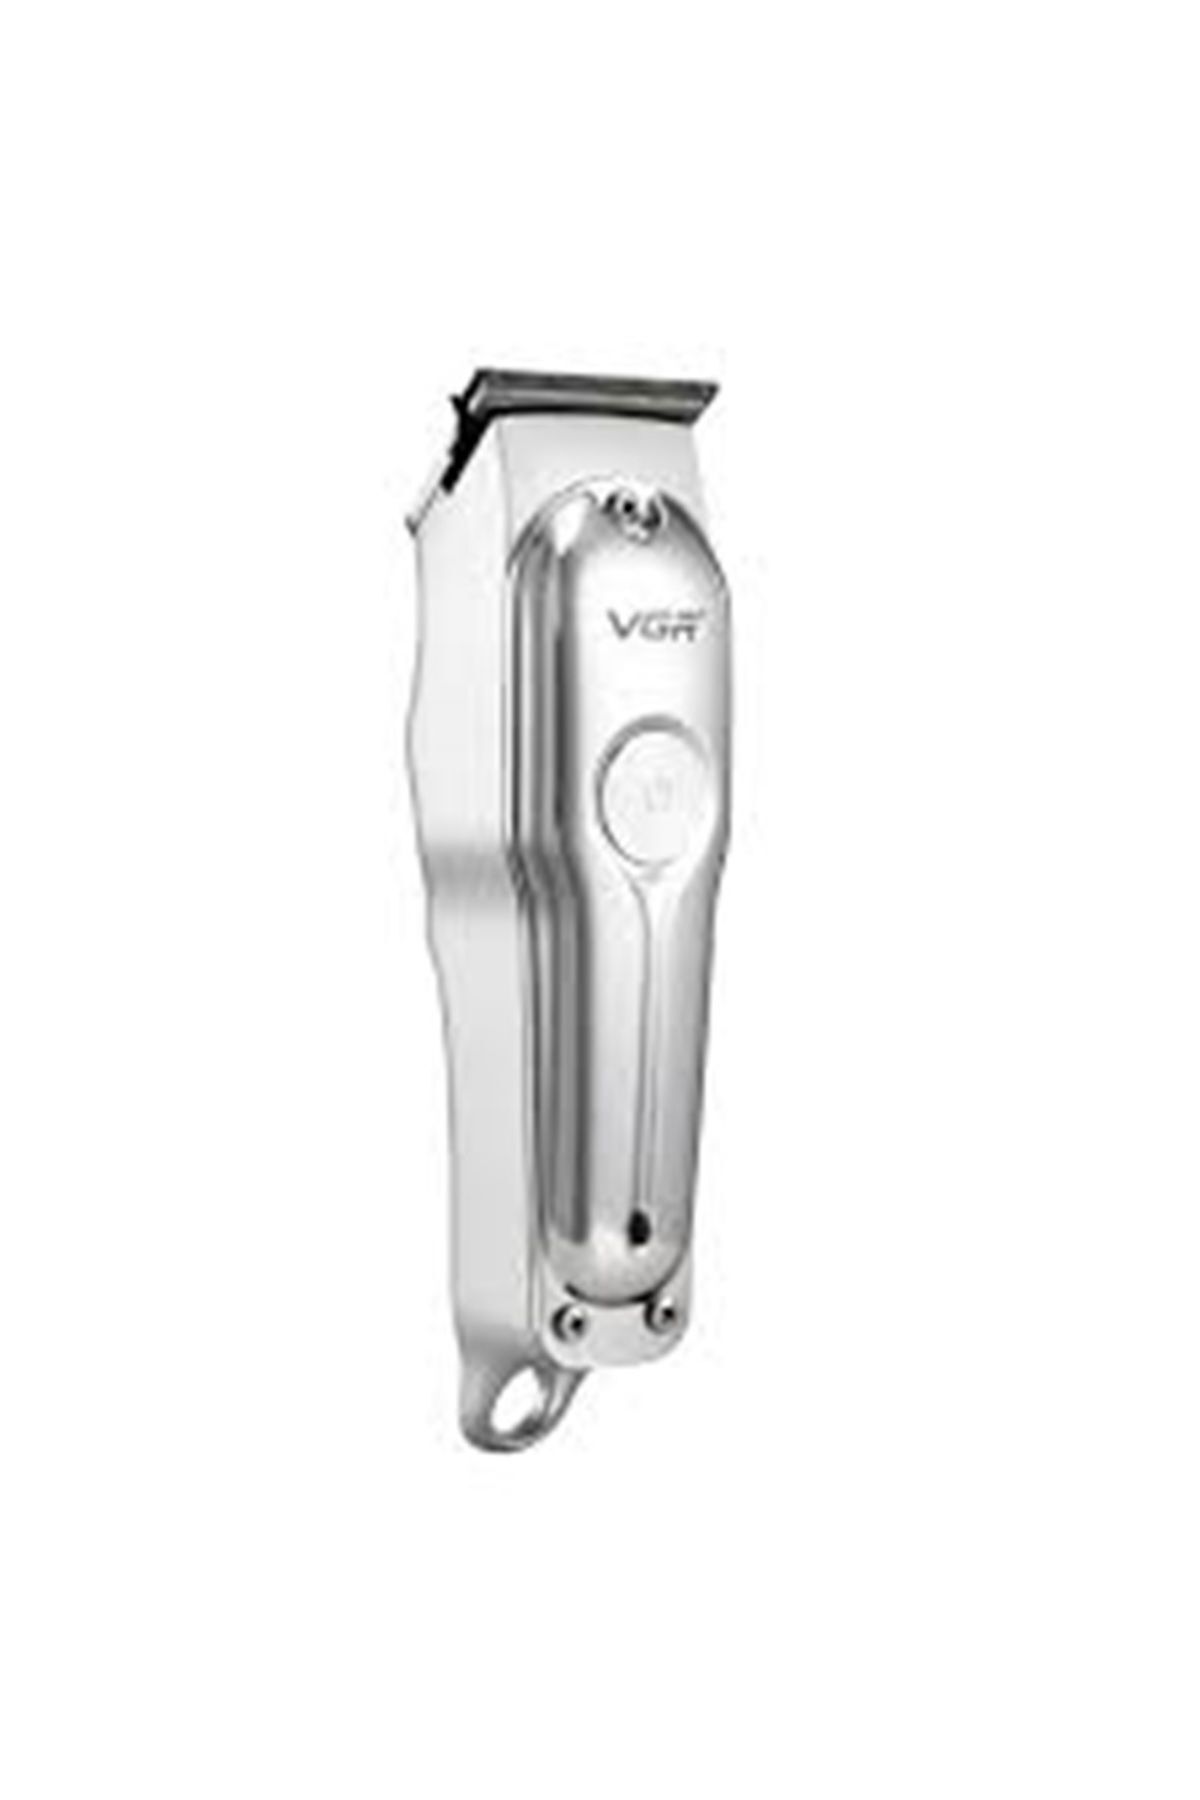 Genel Markalar v-071 profesyonel traş makinesi sakal ense ve vücut kılı lazer epilasyon öncesi traş makinesi